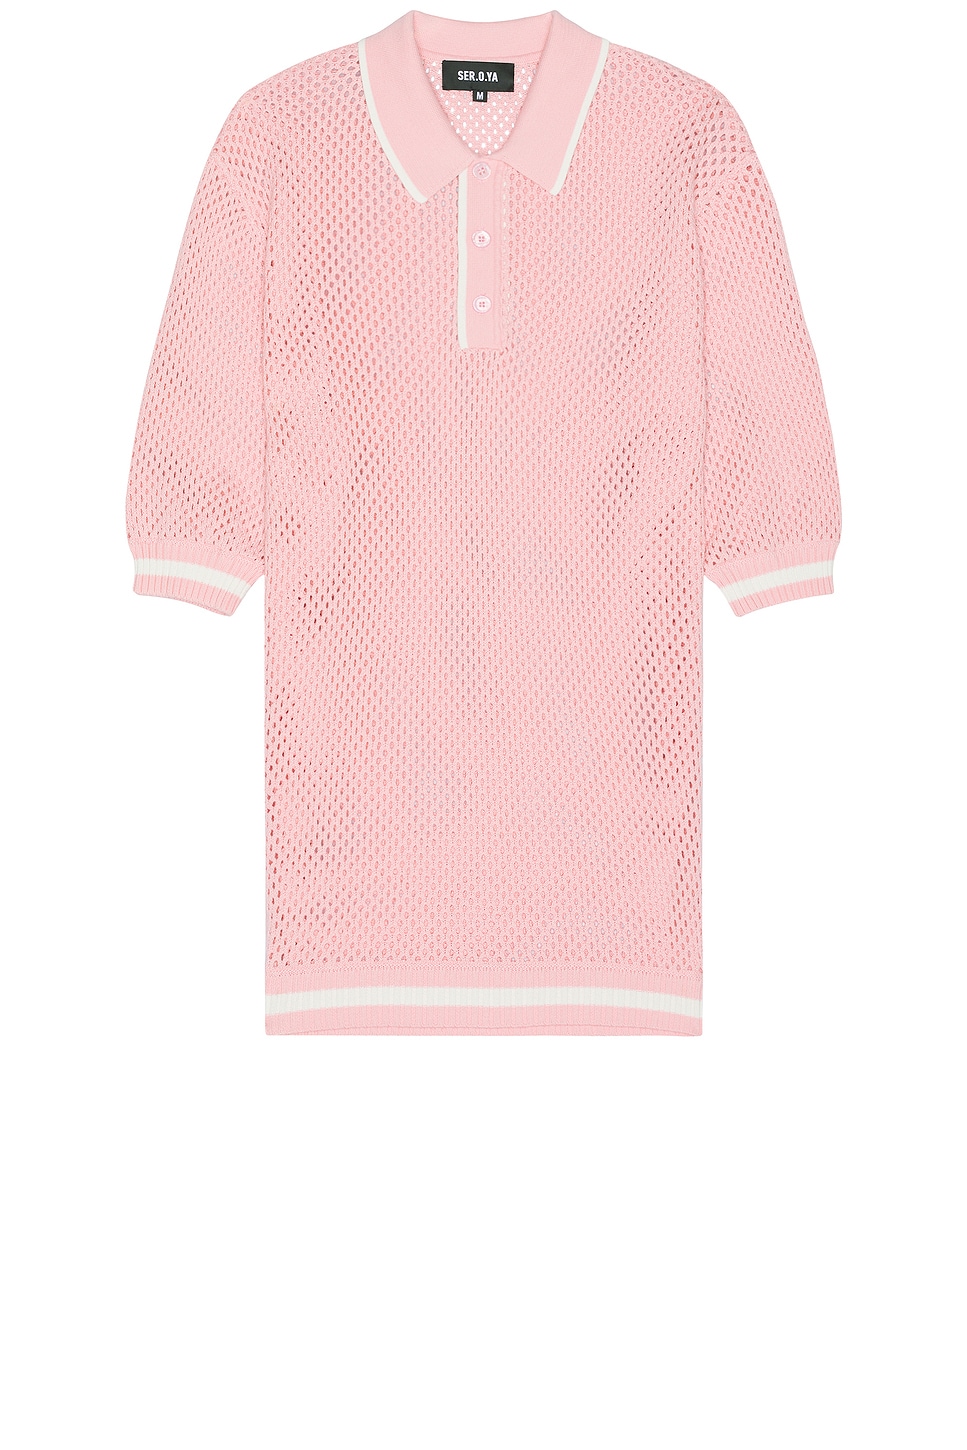 Zane Crochet Polo in Pink